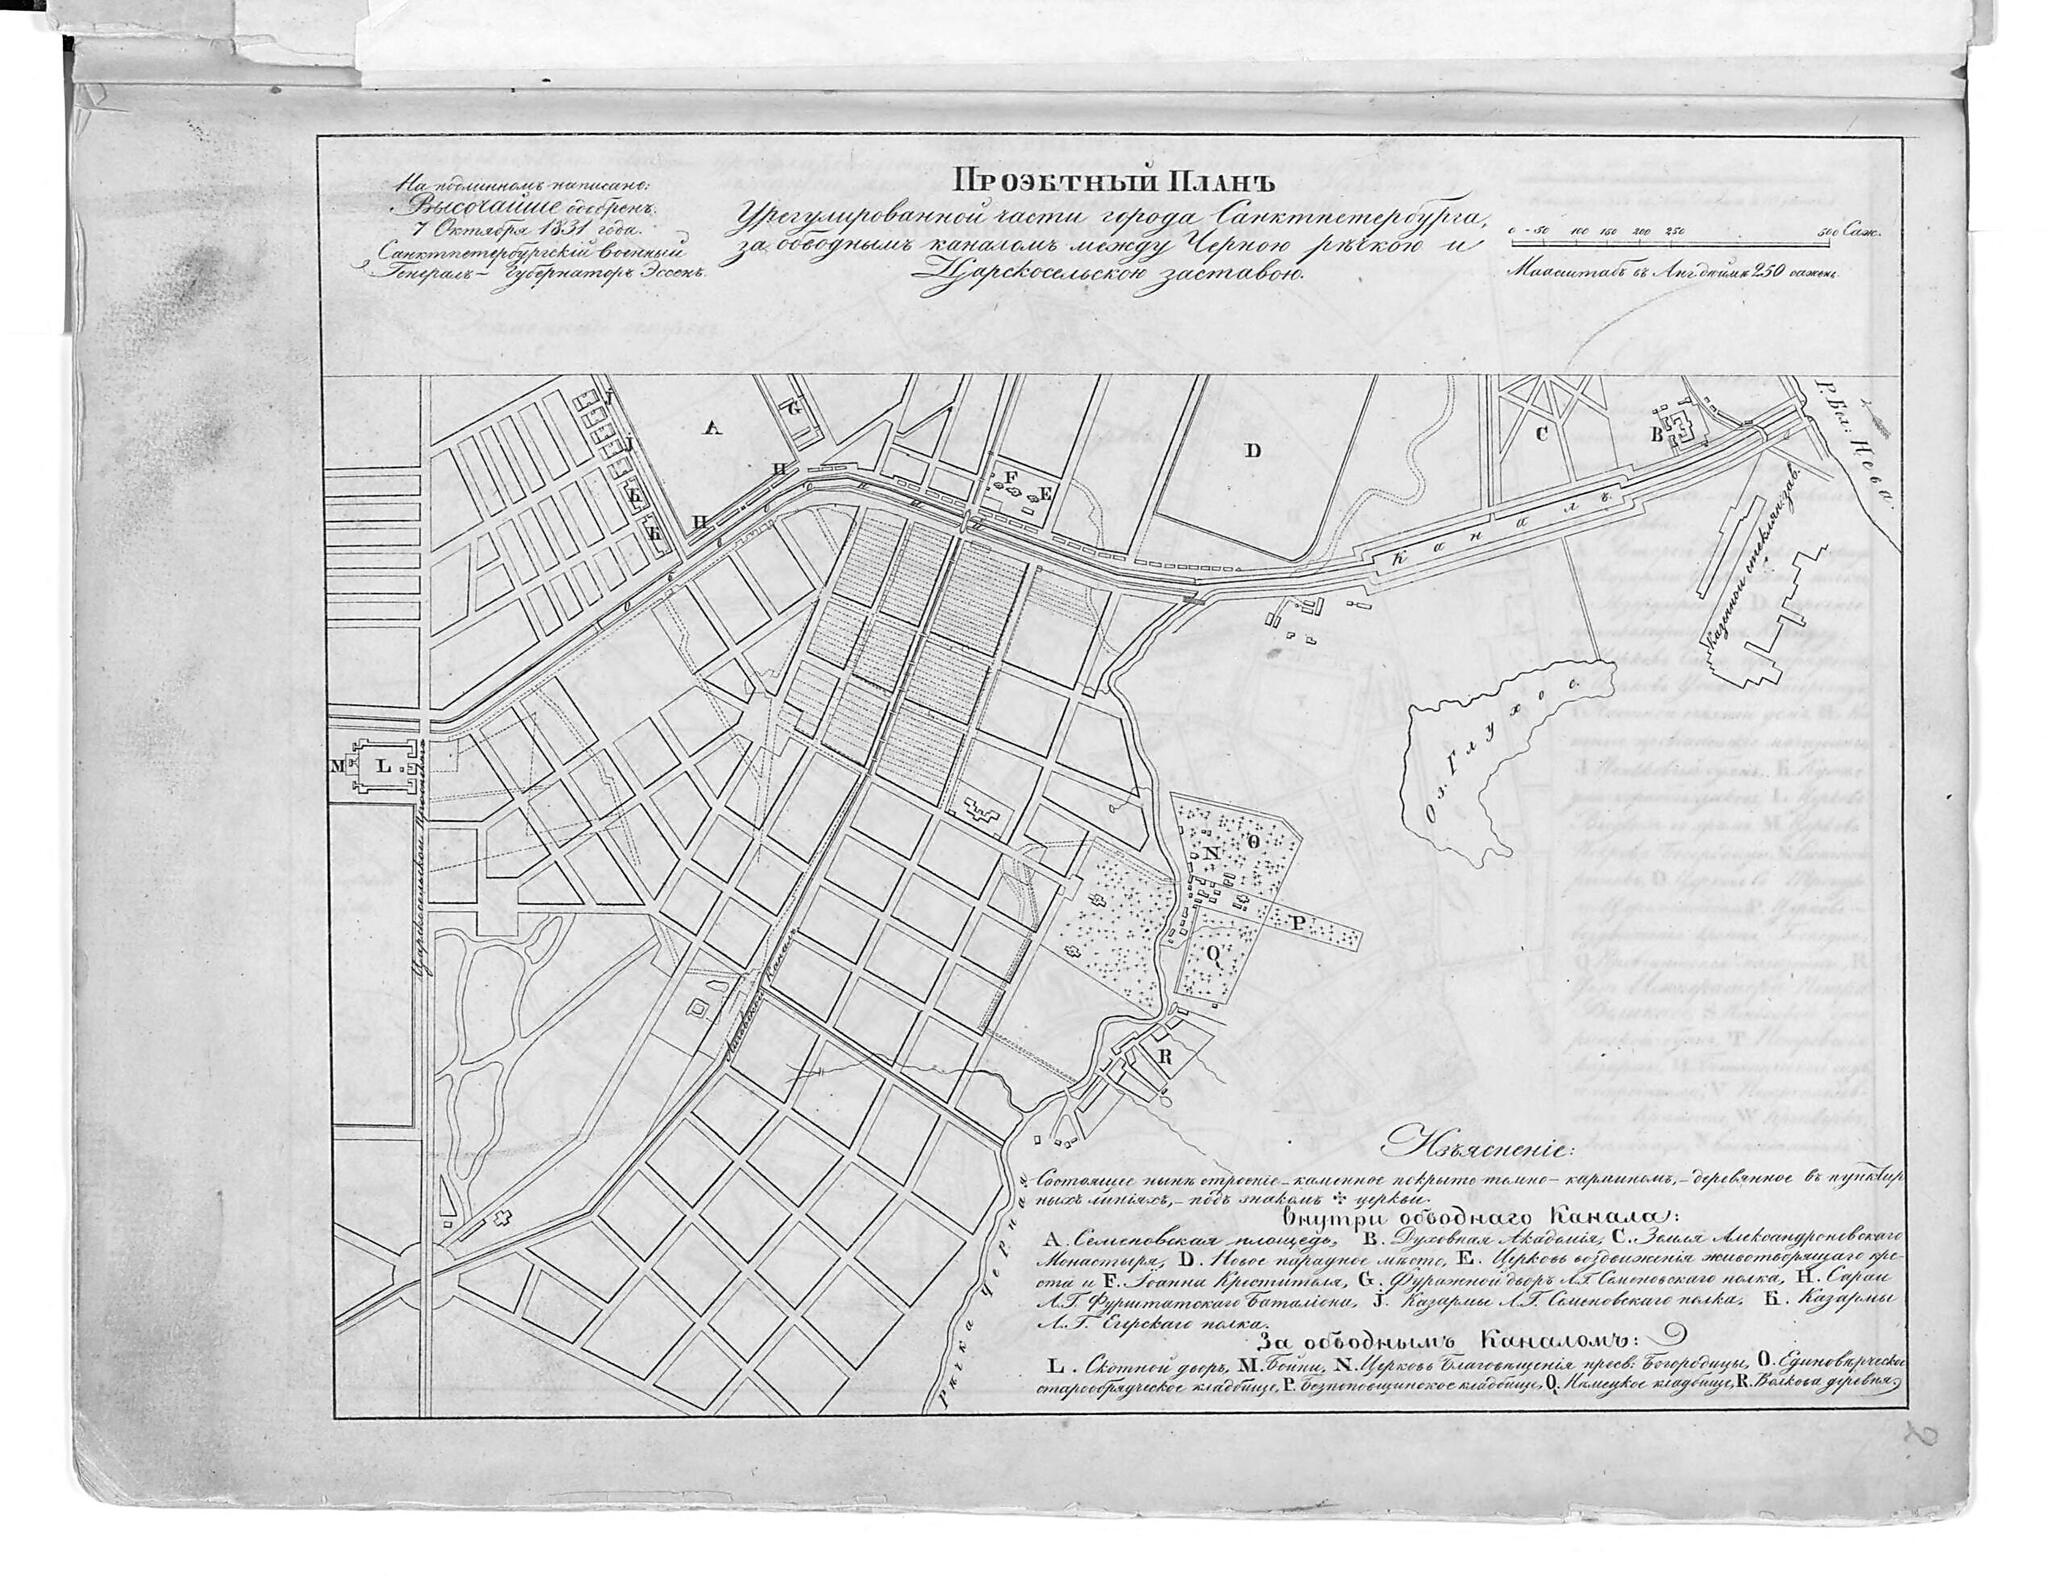 This old map of Proektnyĭ Plan Uregulirovannoĭ Chasti Goroda Sanktpeterburga Za Obvodnym Kanalom Mezhdu Chernoi︠u︡ Rechkoi︠u︡ I T︠S︡arskosel&